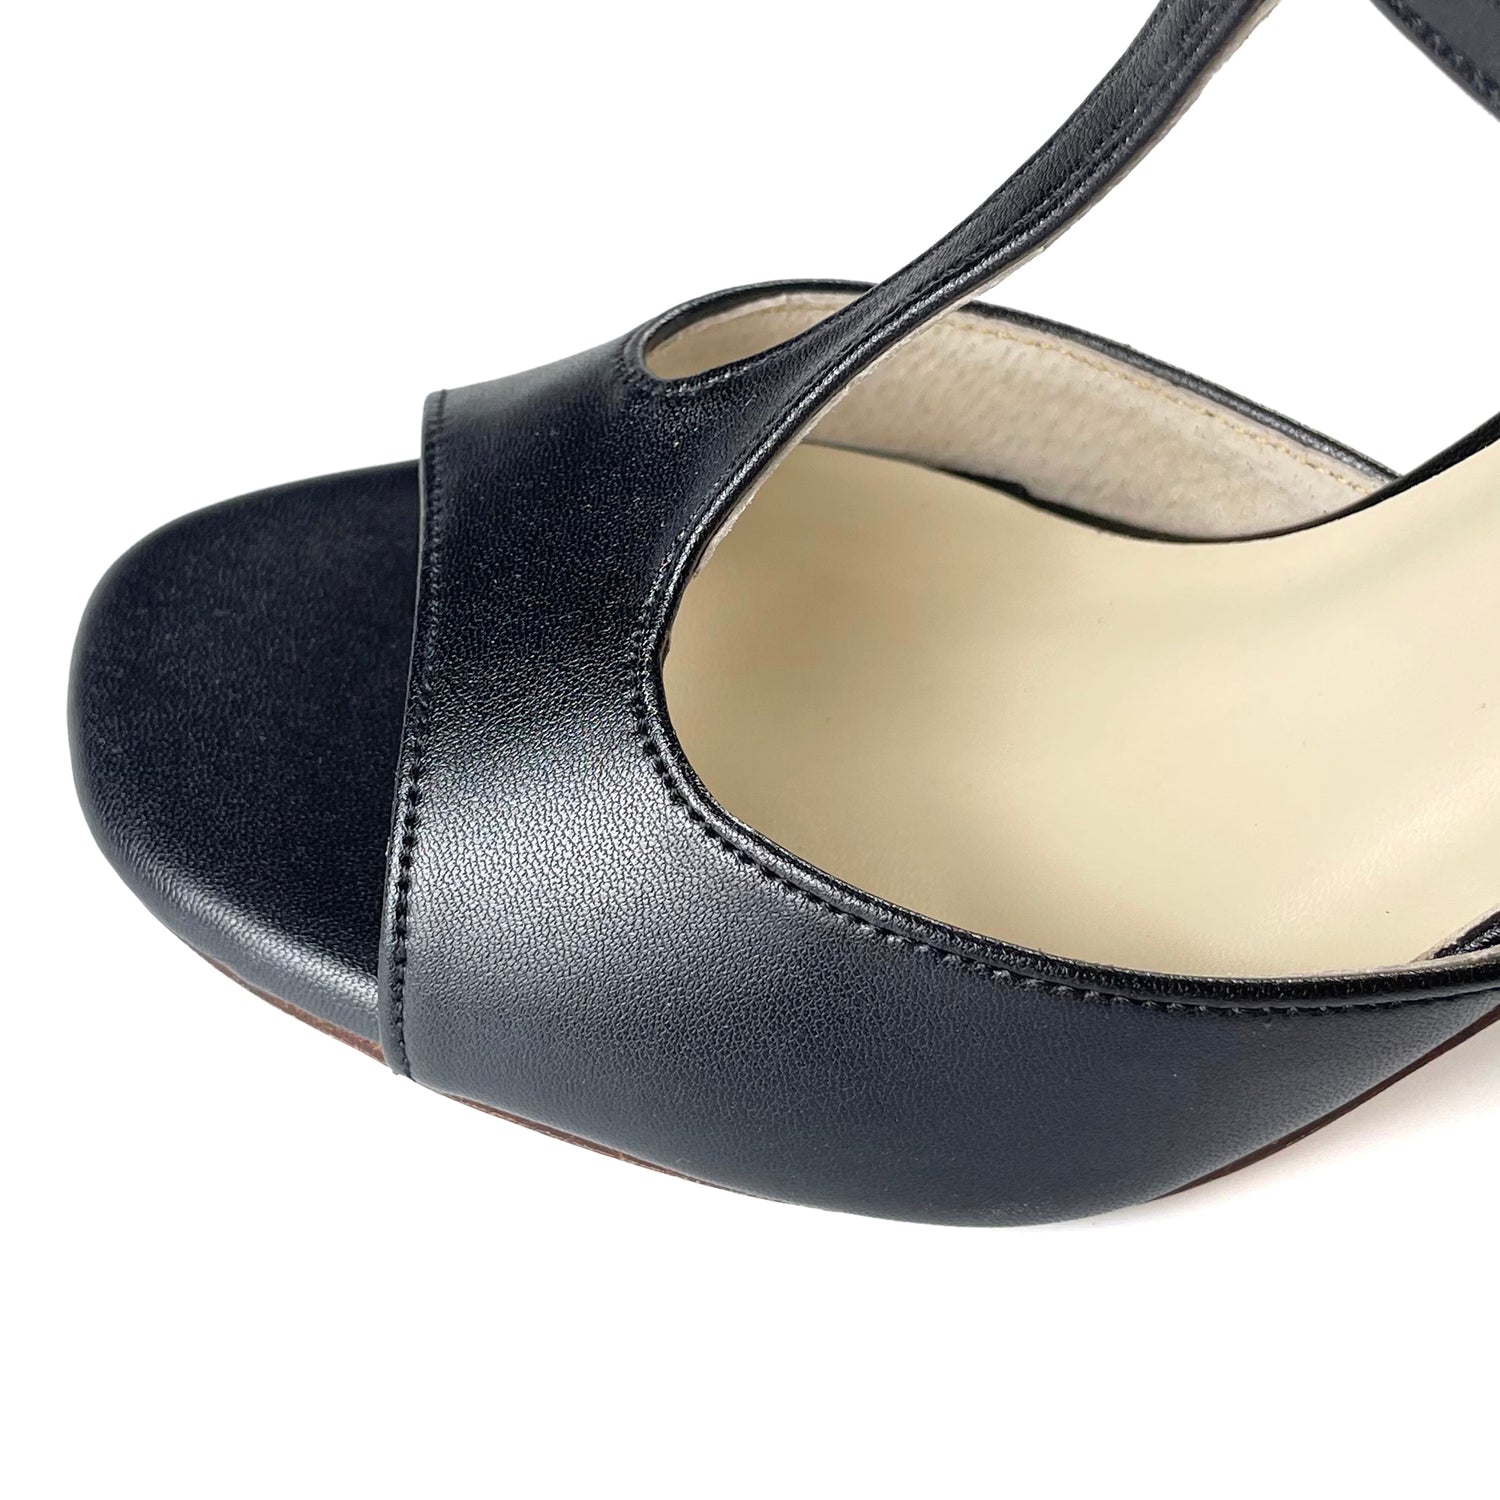 Pro Dancer Women's Tango Shoes high heel black leather sole dance sandals PD-9012D Argentina6